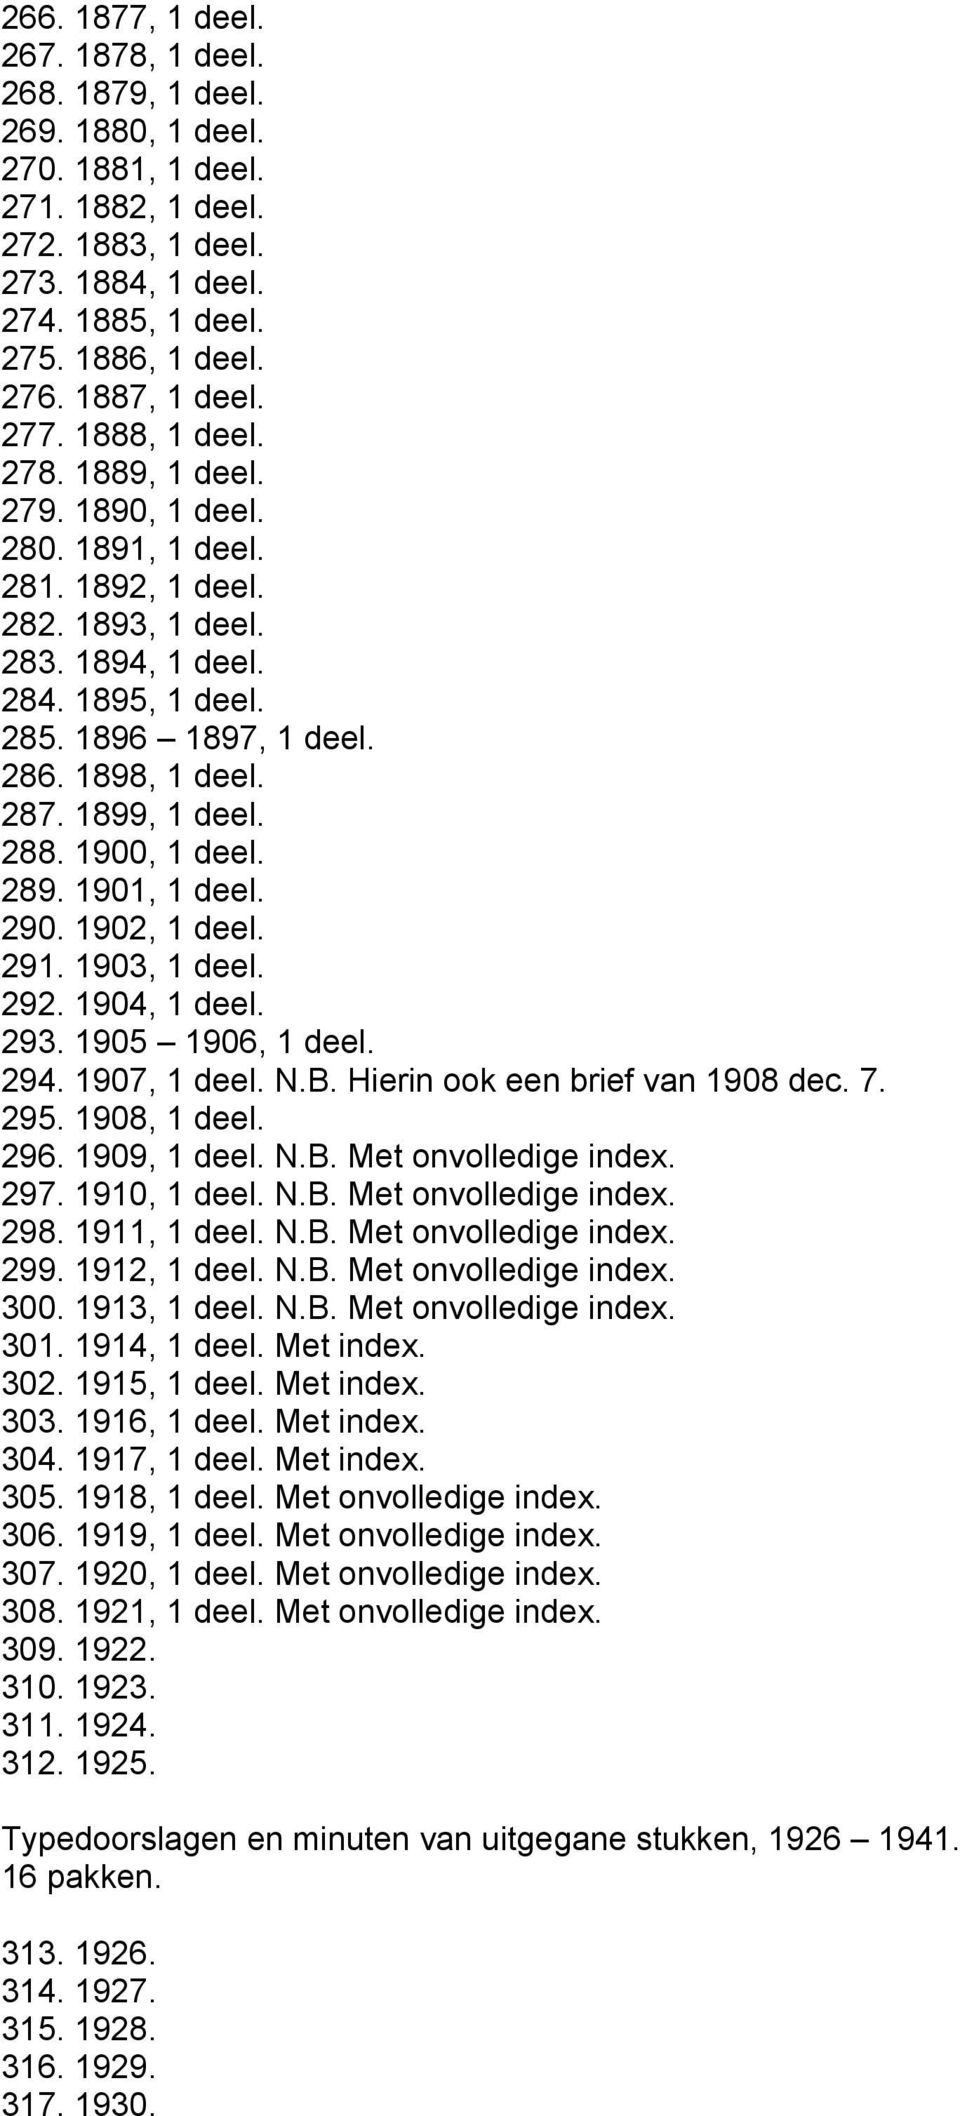 1909, N.B. Met onvolledige index. 297. 1910, N.B. Met onvolledige index. 298. 1911, N.B. Met onvolledige index. 299. 1912, N.B. Met onvolledige index. 300. 1913, N.B. Met onvolledige index. 301.